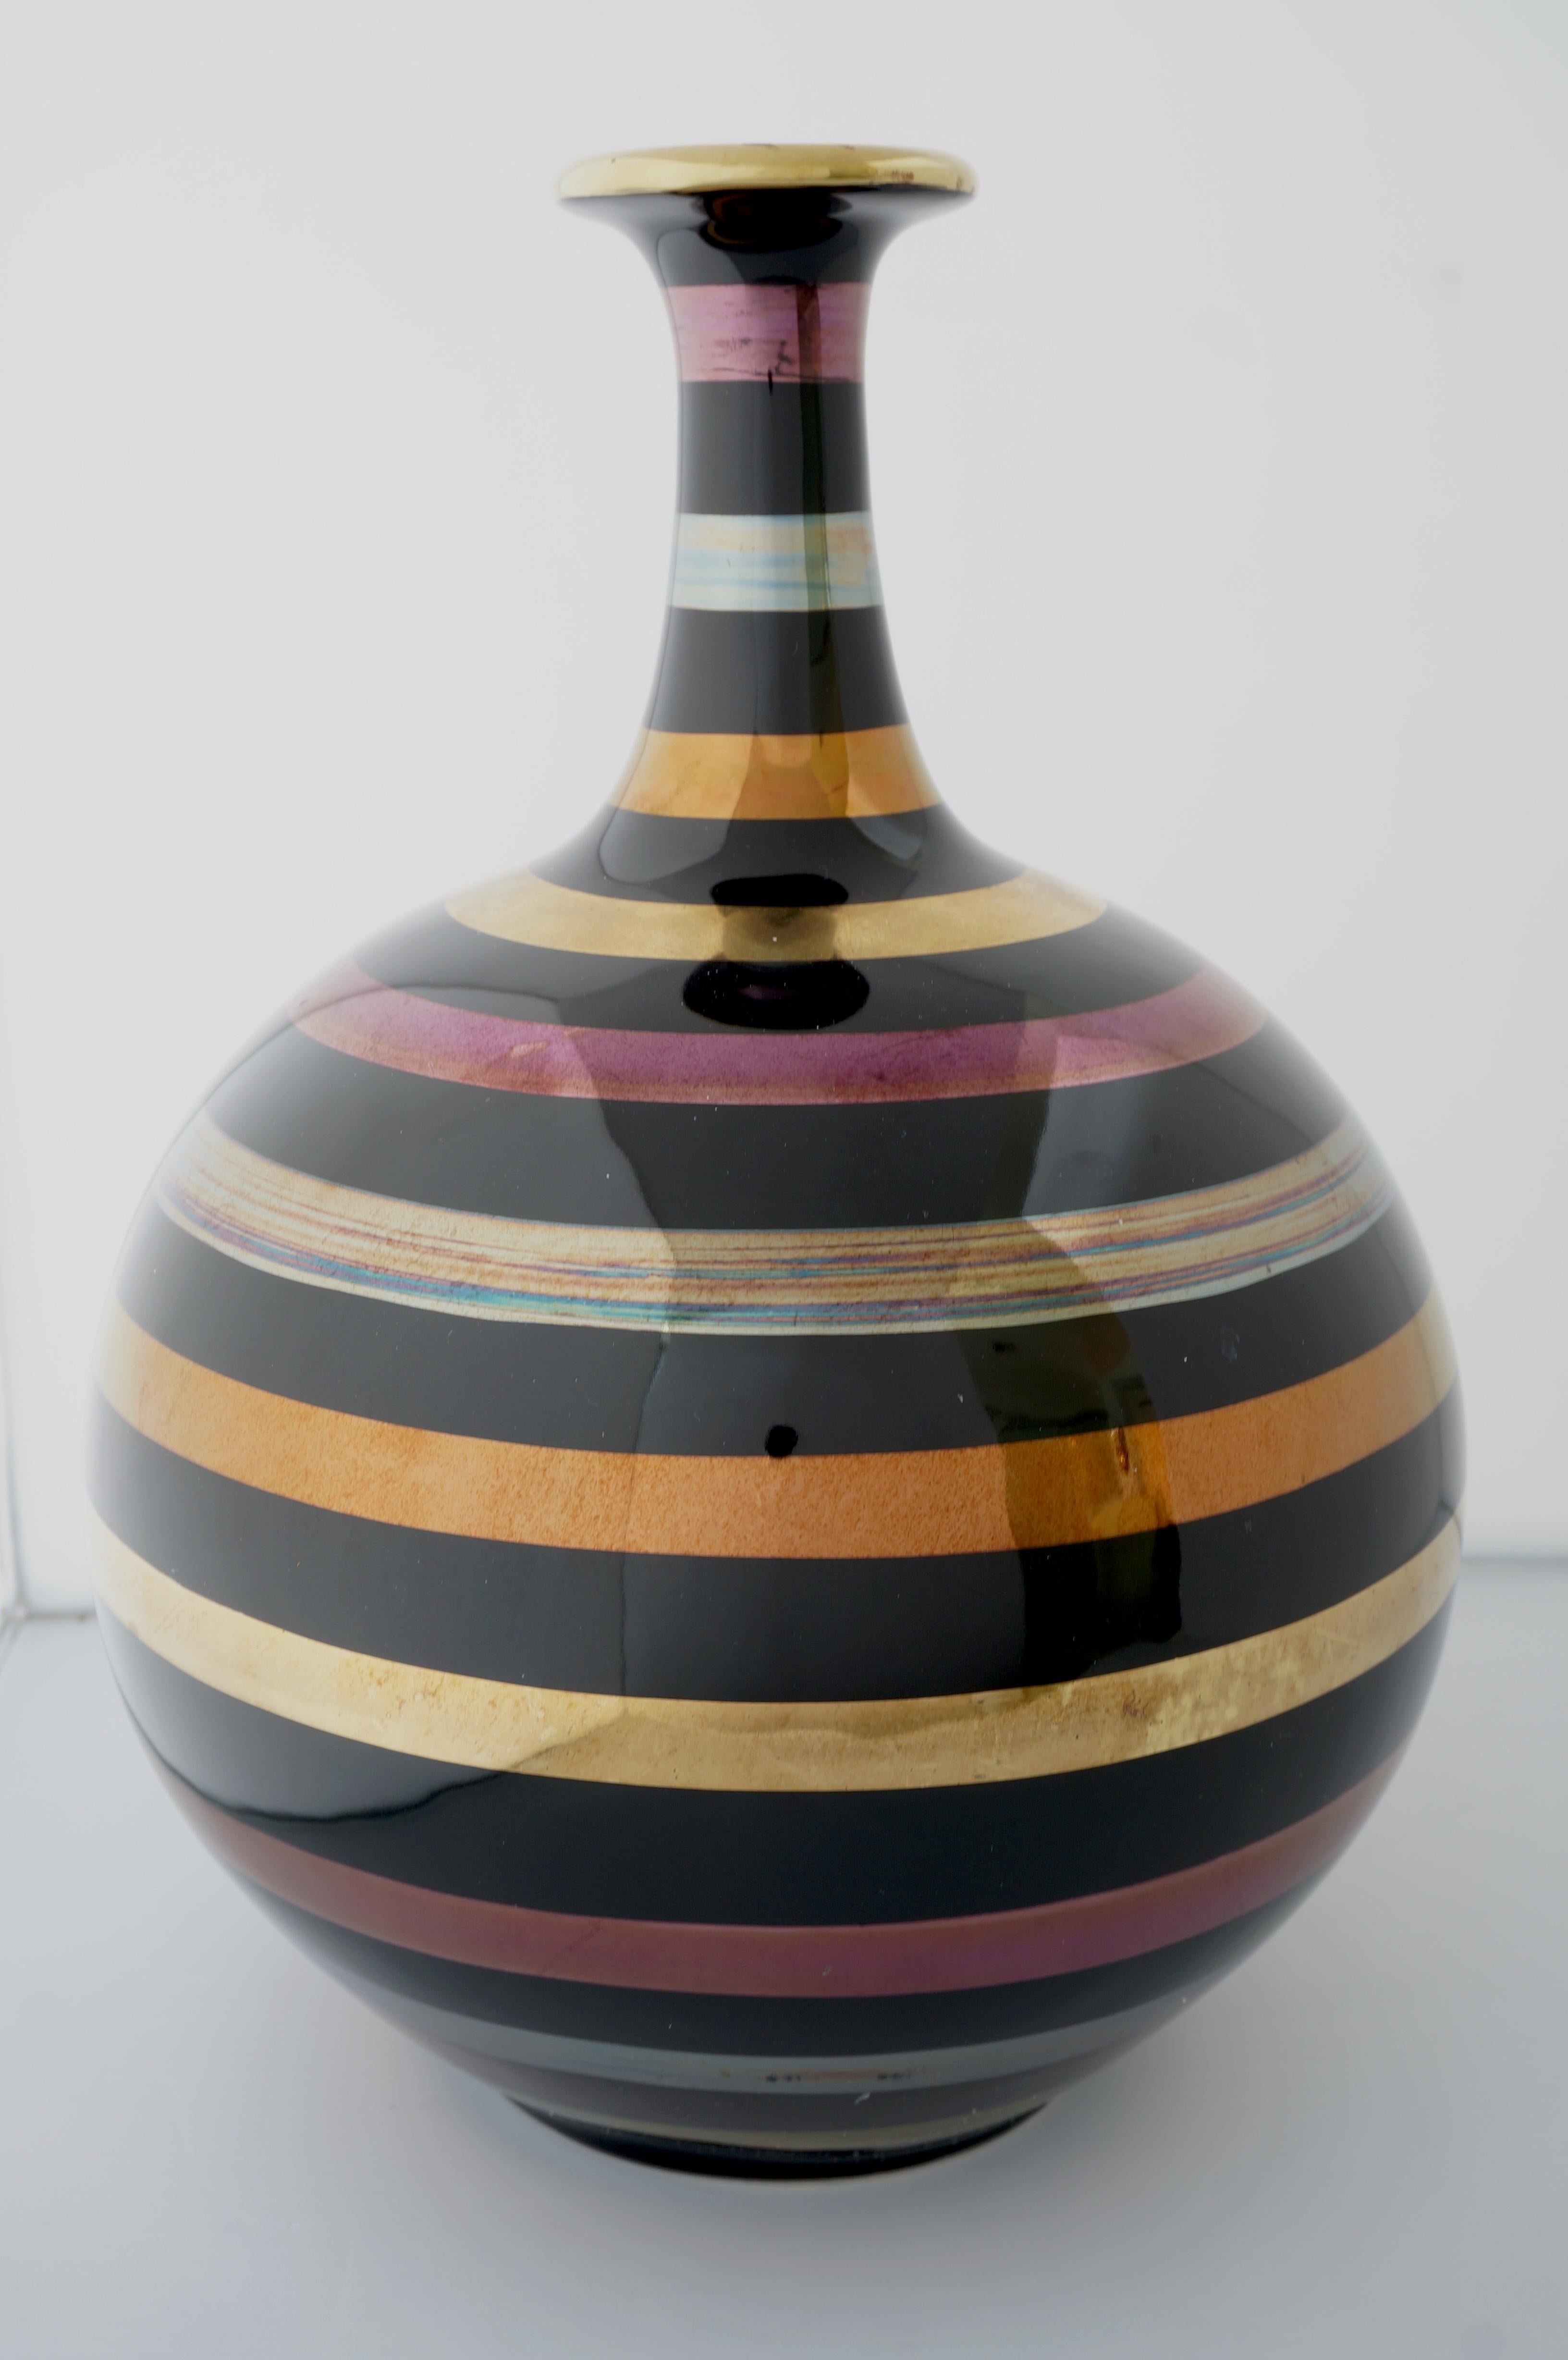 Ce vase élégant et chic en céramique émaillée est fini avec des bandes d'or 24k, d'argent et de cuivre.  La pièce fait une déclaration subtile avec sa forme et l'utilisation des matériaux.  